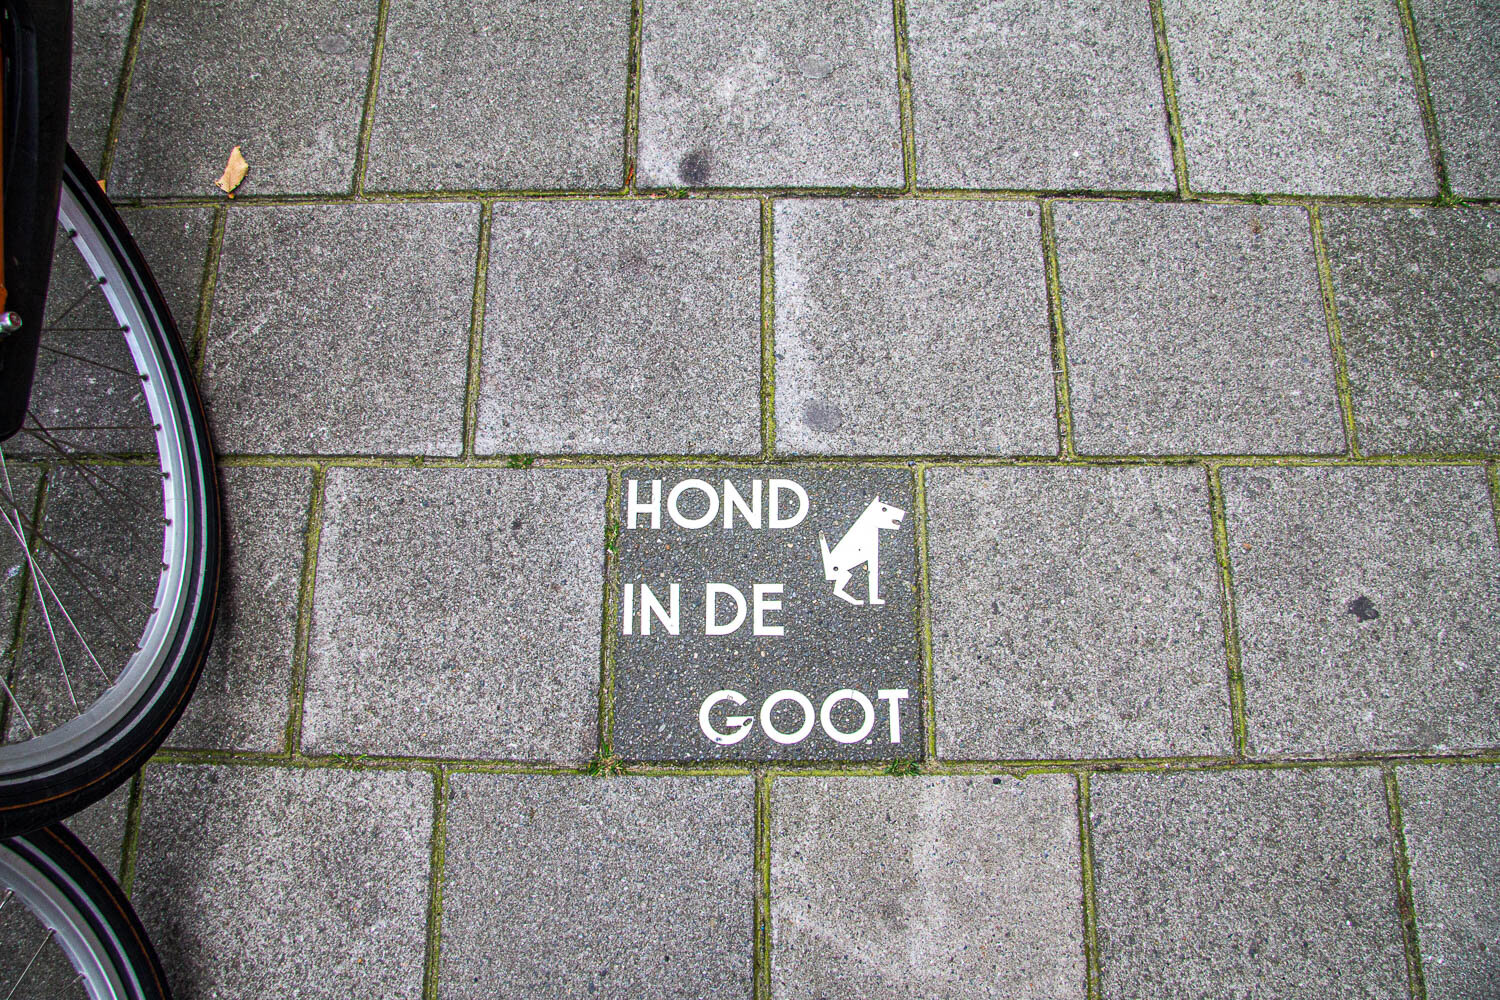 Dog on curb, Amsterdam